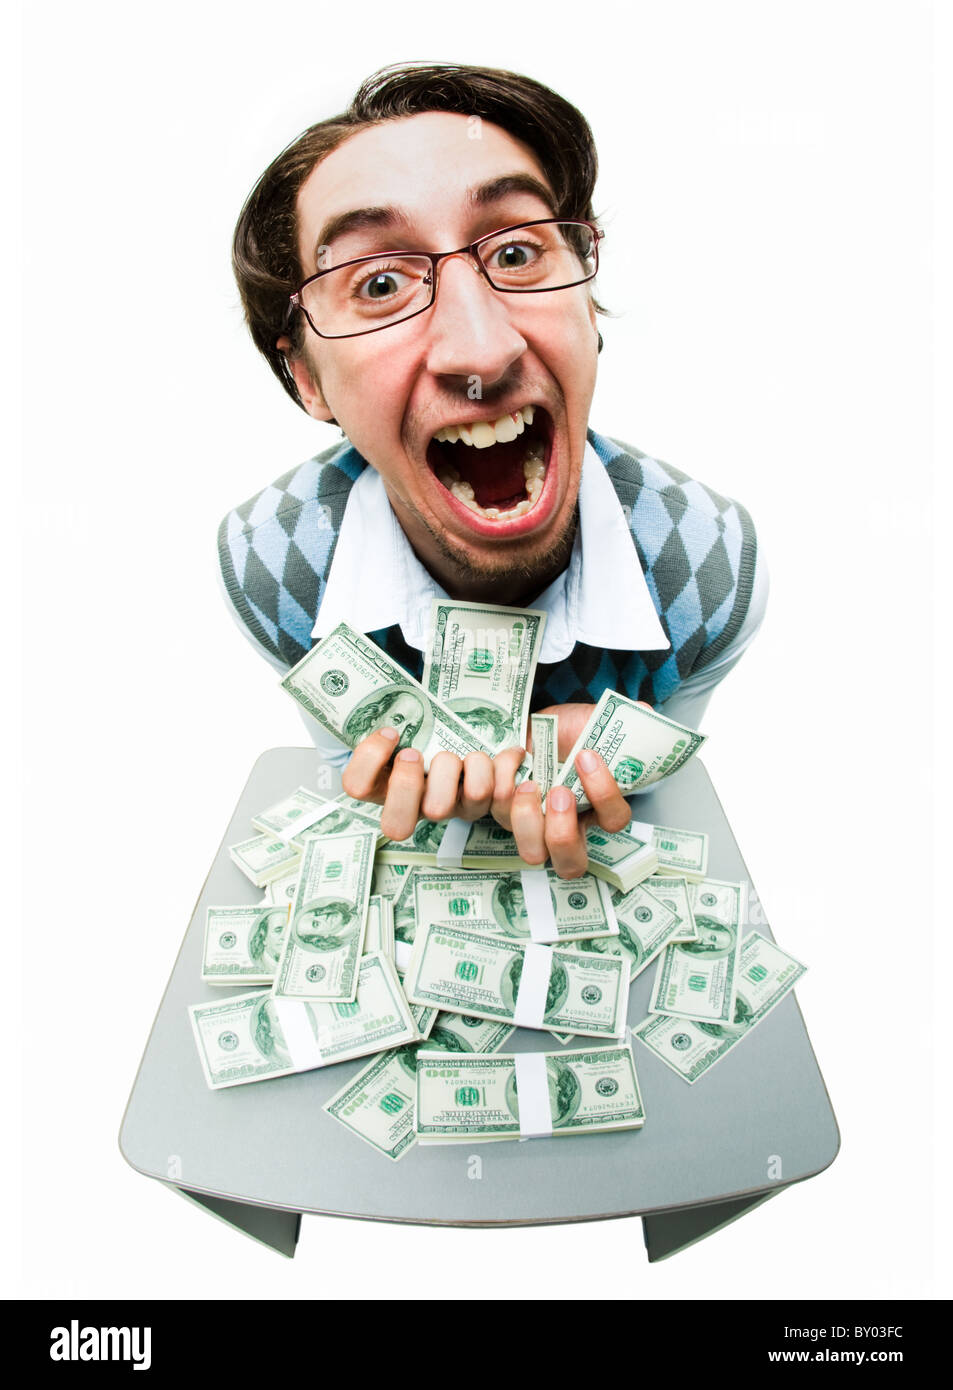 Ritratto di uomo ricco rastrellamento in dollari americani con espressione soddisfatta Foto Stock